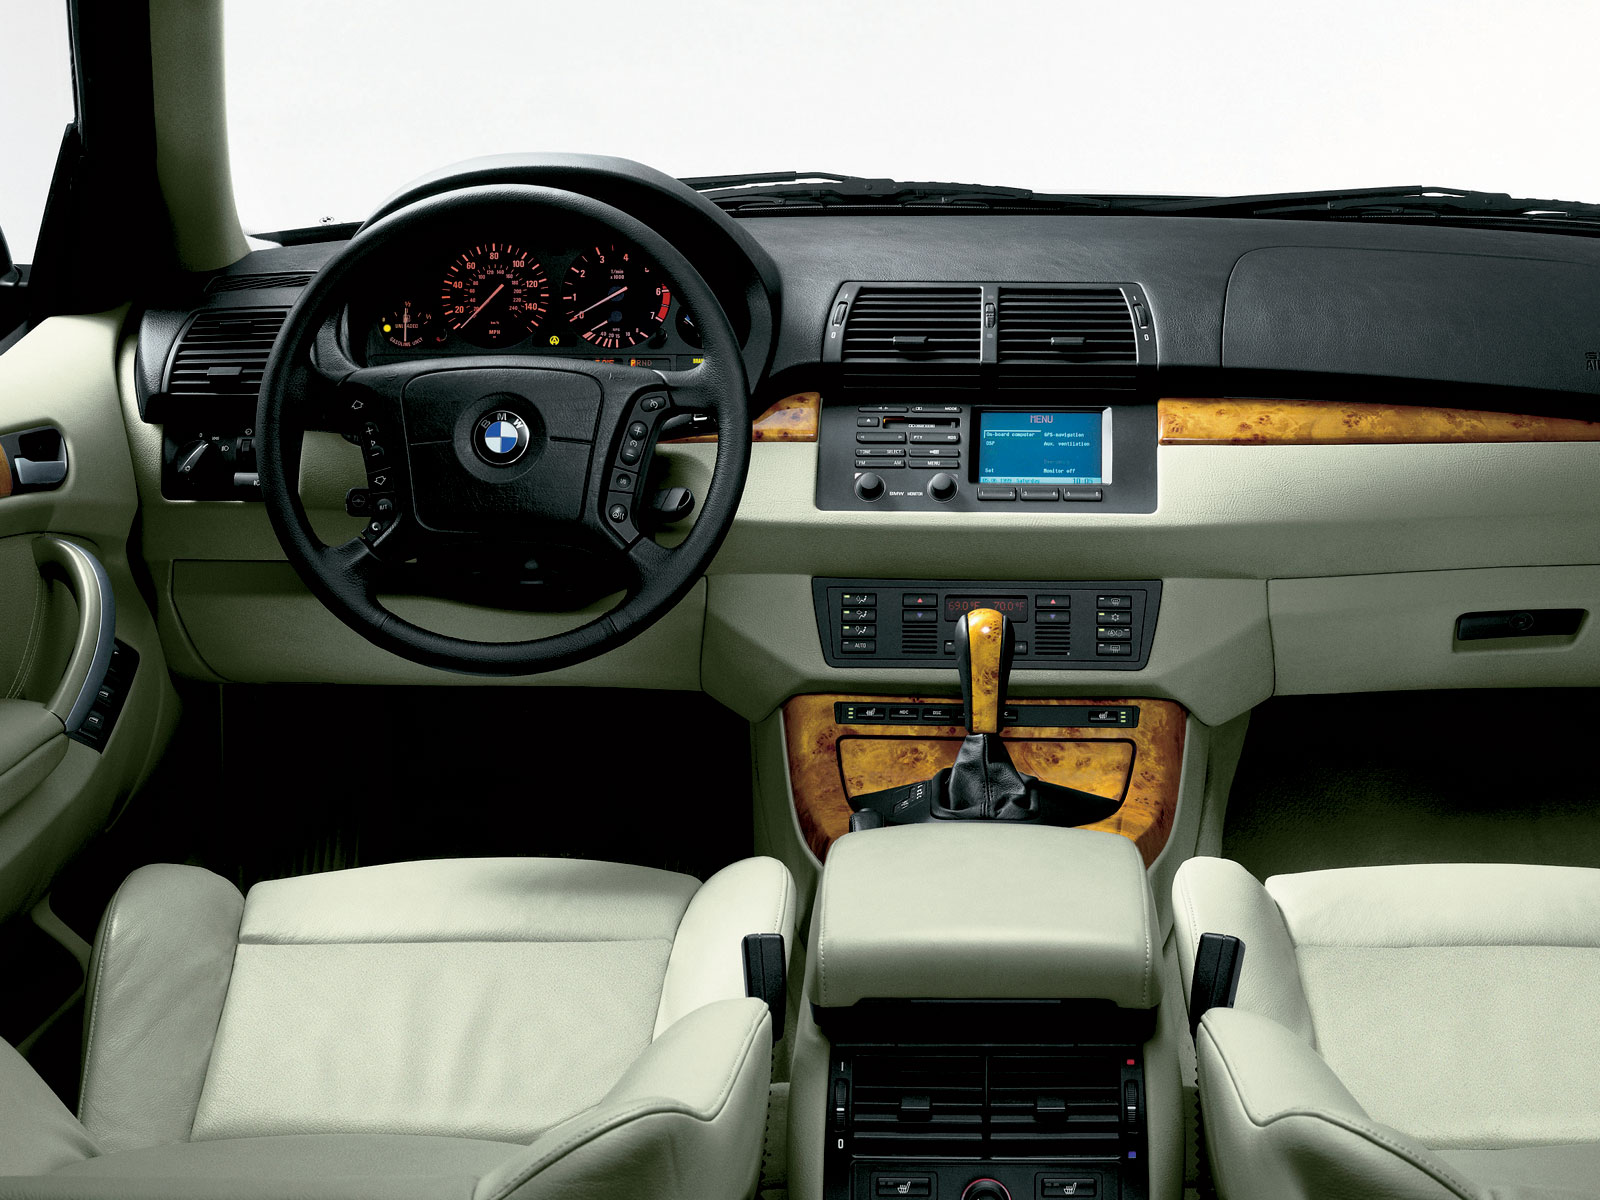 2000 BMW X5 (E53) (c) BMW